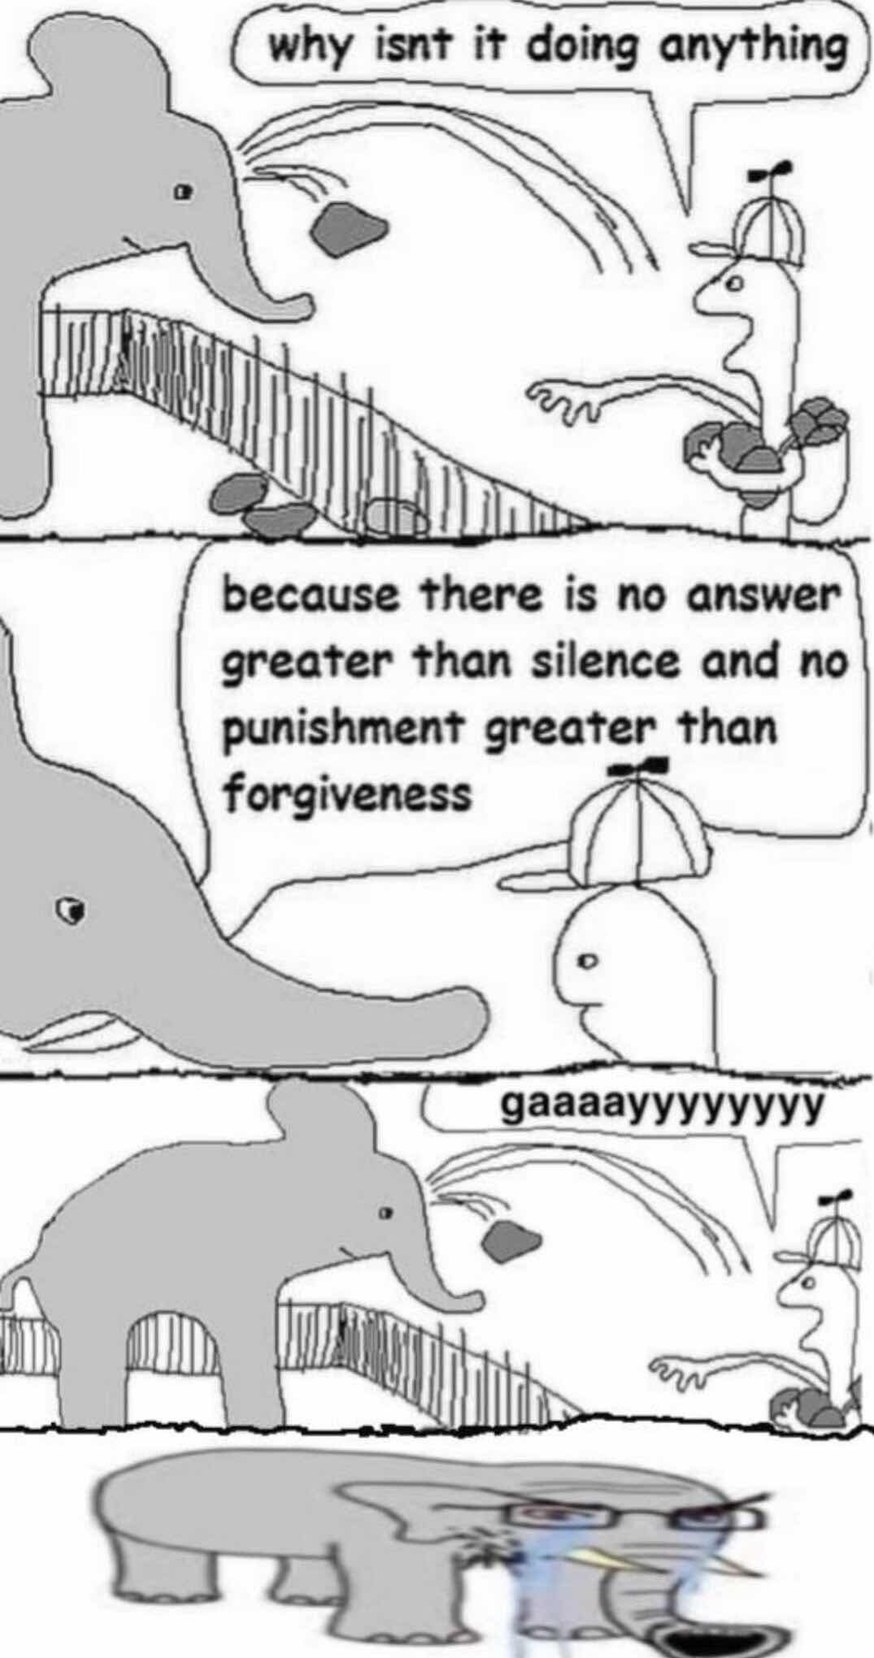 dongs in an elephant - meme